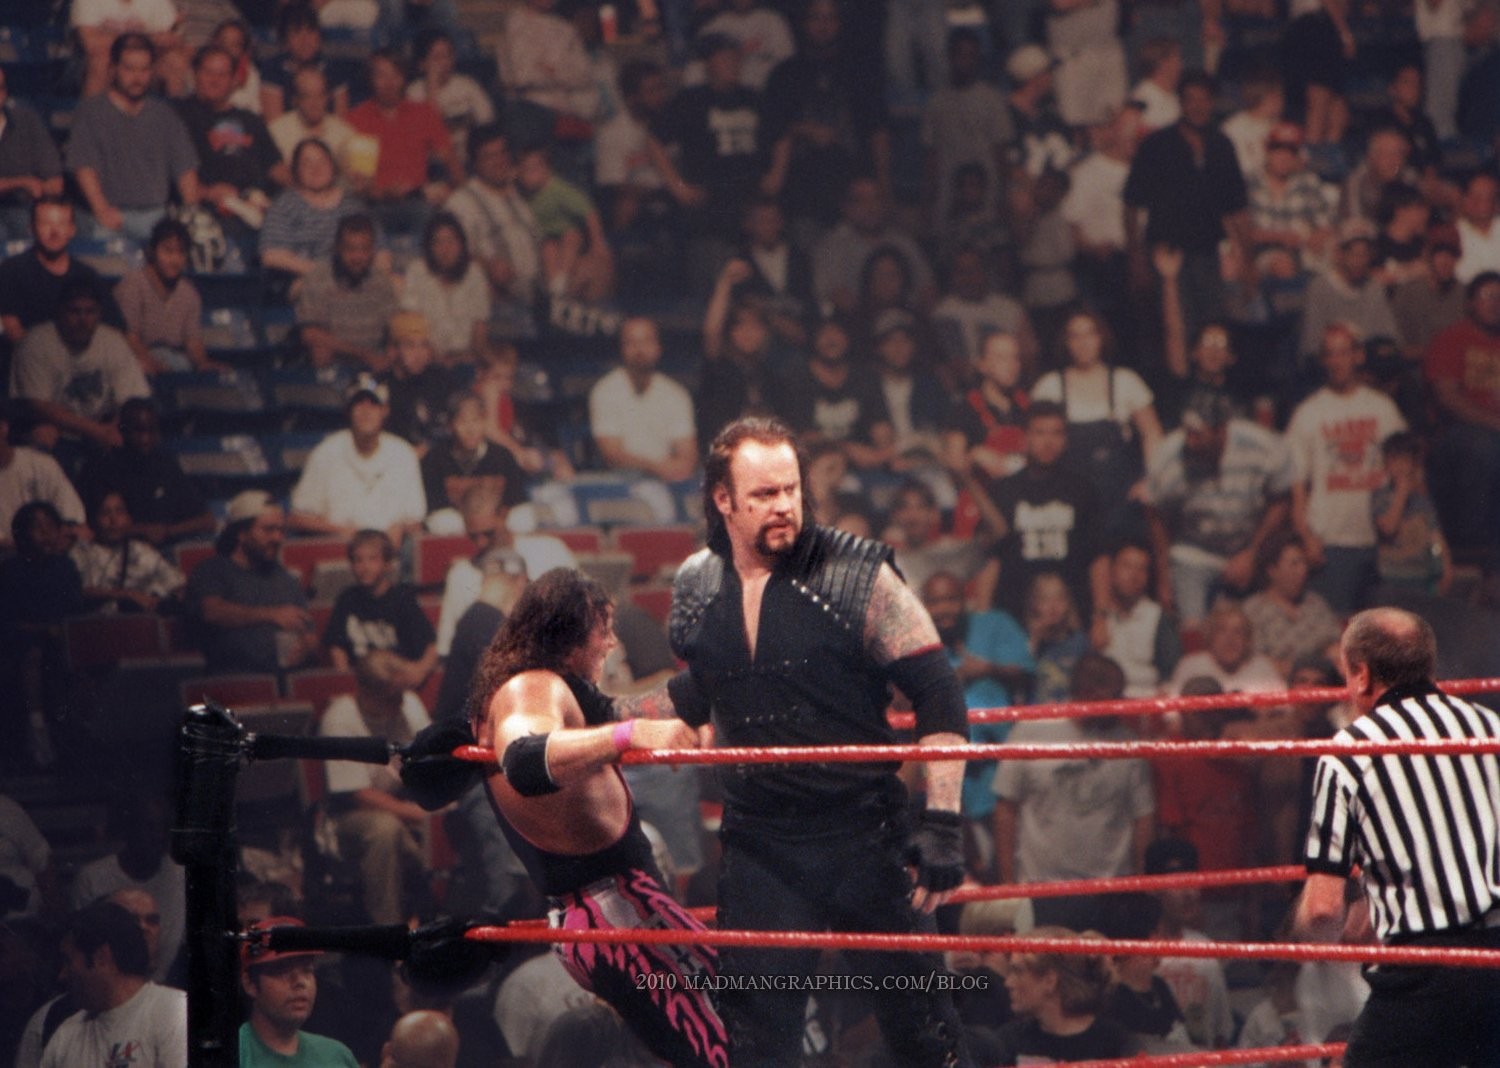 People 1500x1068 wrestling WWE wrestler wwf The Undertaker Bret Hart Earl Hebner crowds men